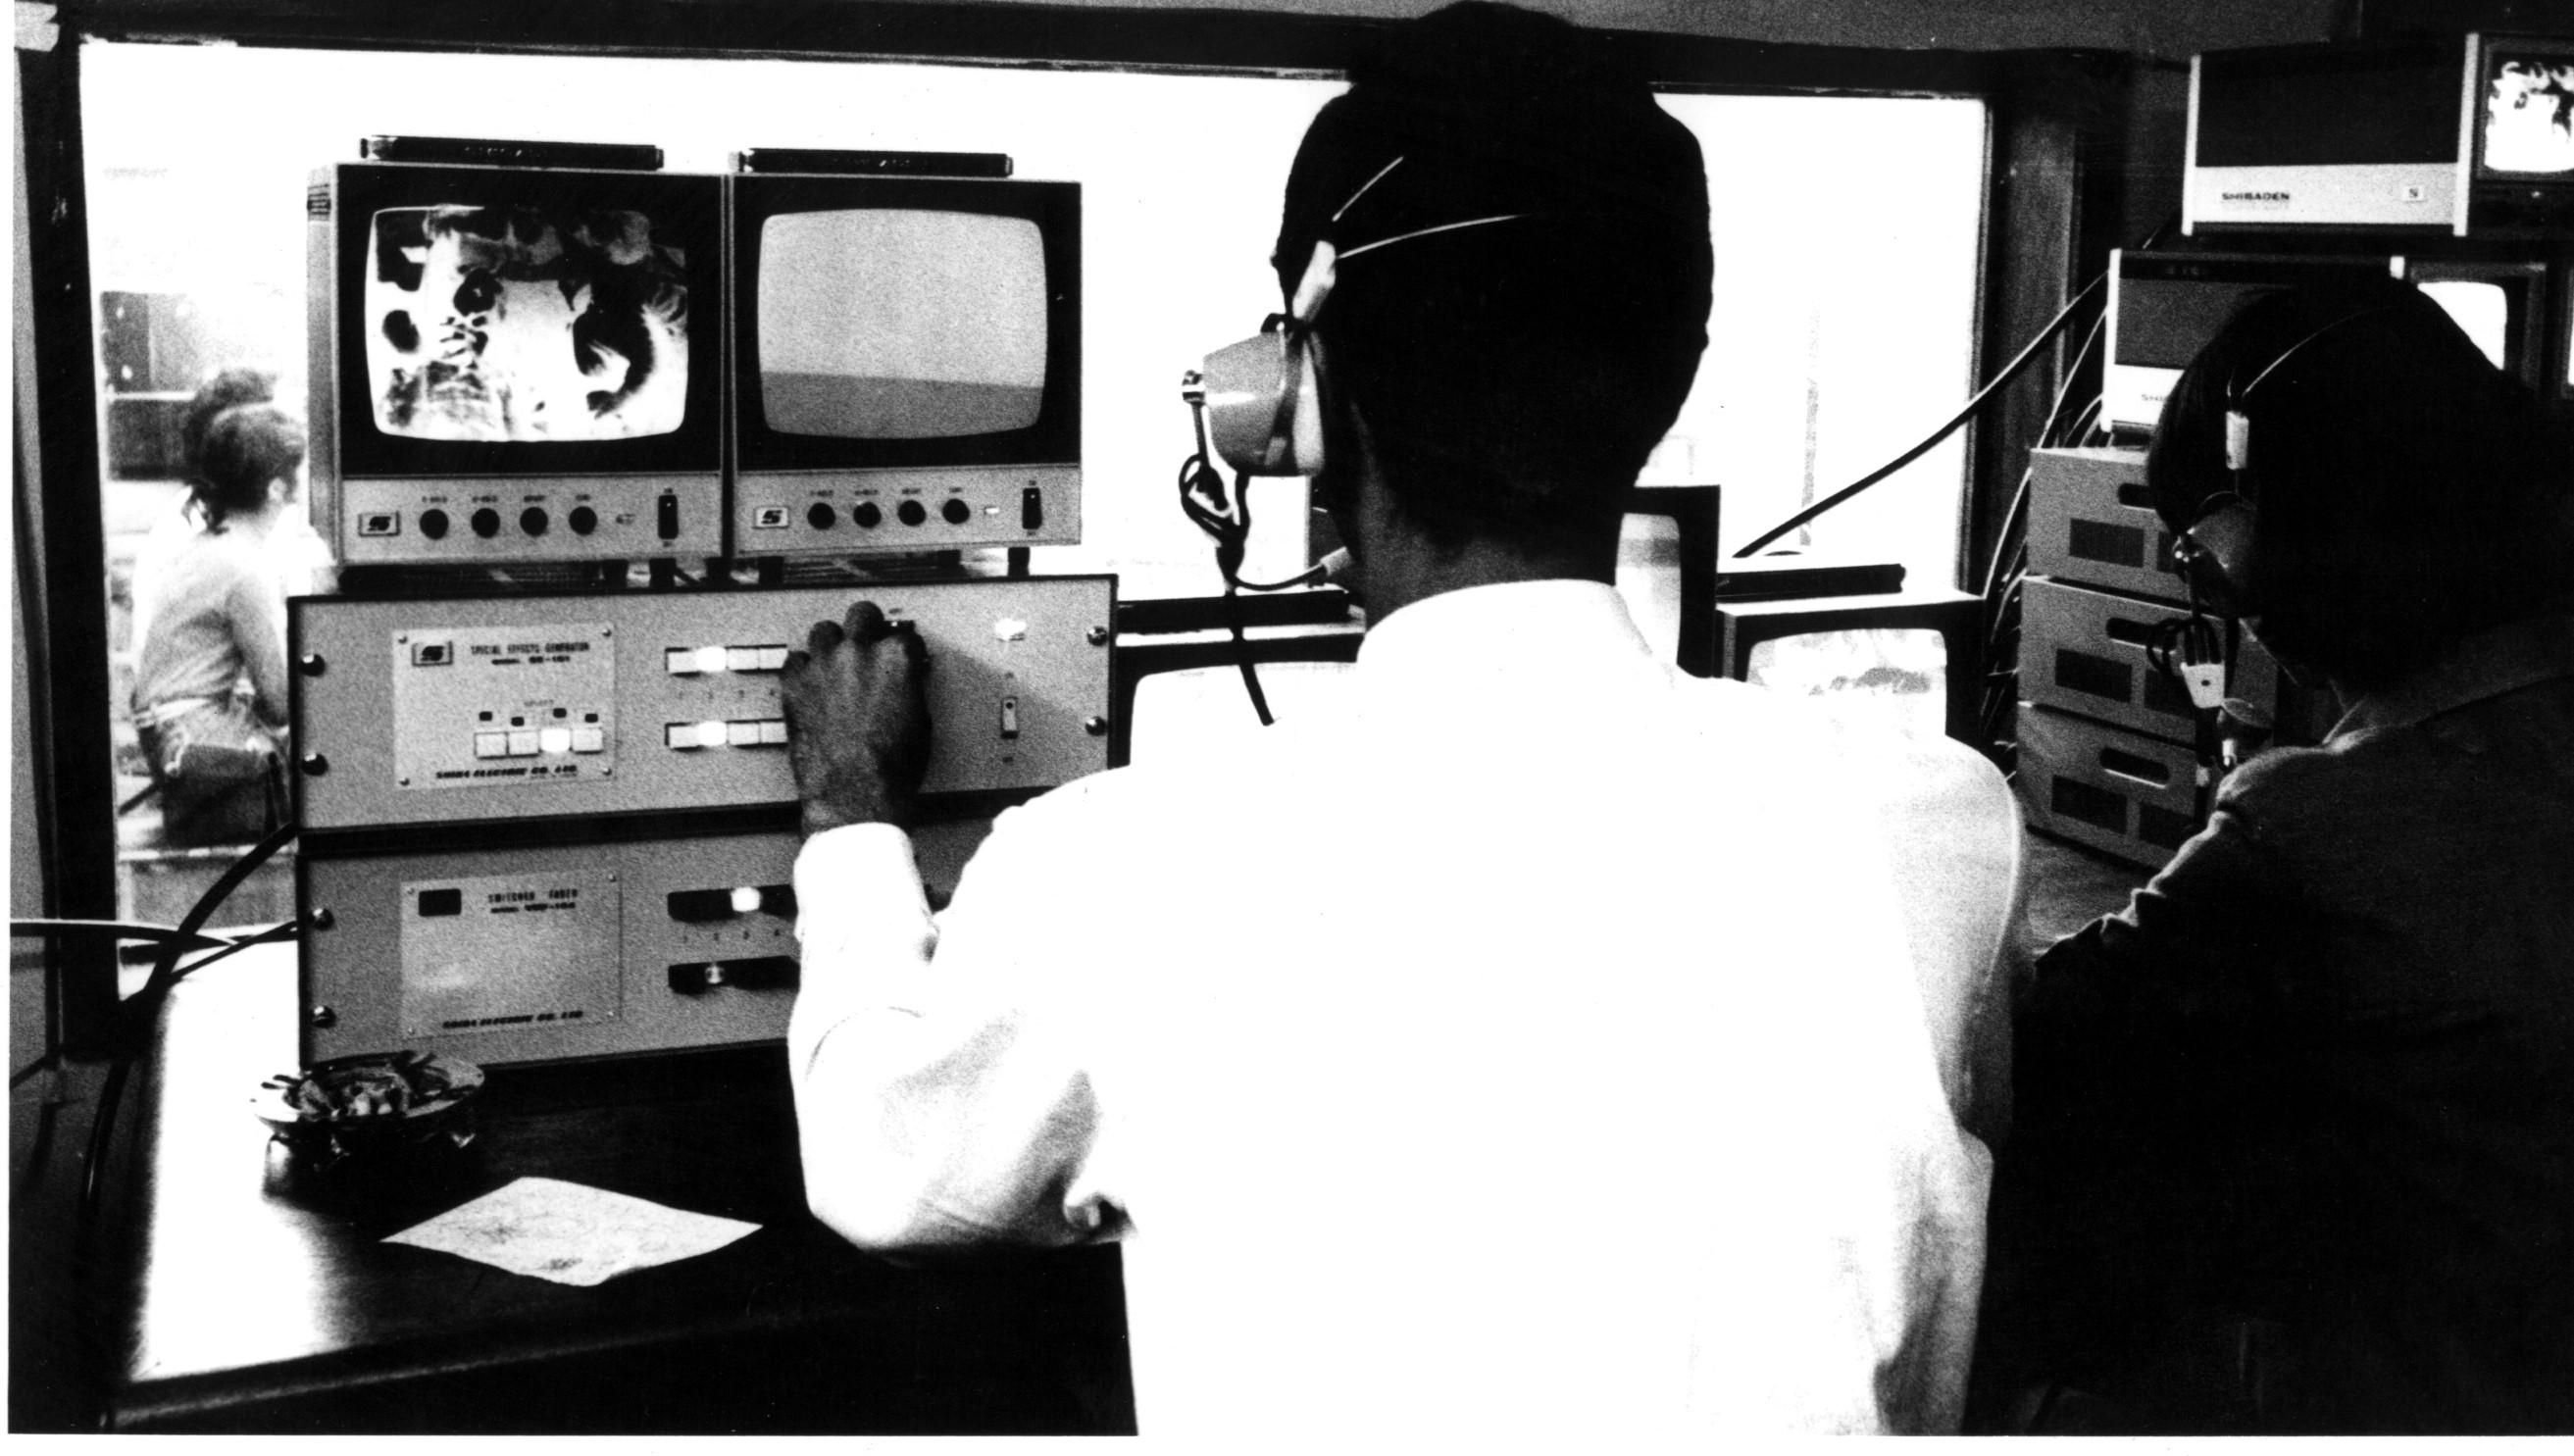 Aula prática na Faculdade de Comunicação. Monitoramento de aparelhos num estúdio de televisão, 1998